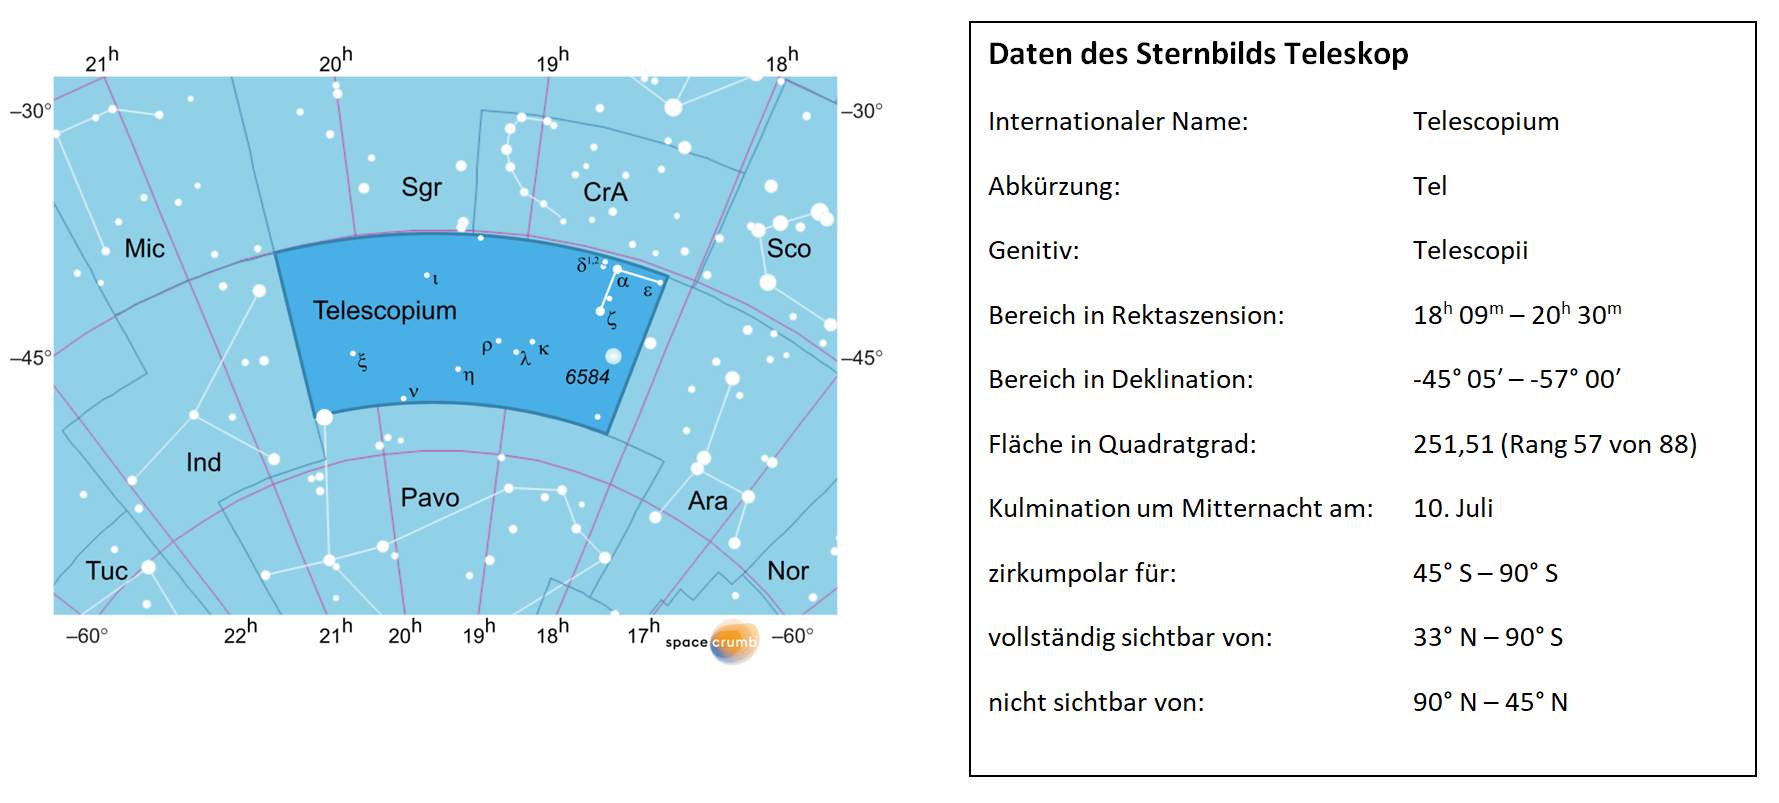 Eine Himmelskarte zeigt weiße Sterne auf blauem Hintergrund. Die Fläche, die das Sternbild Teleskop einnimmt, ist hervorgehoben. Eine Tabelle rechts gibt wichtige Daten des Sternbilds an.